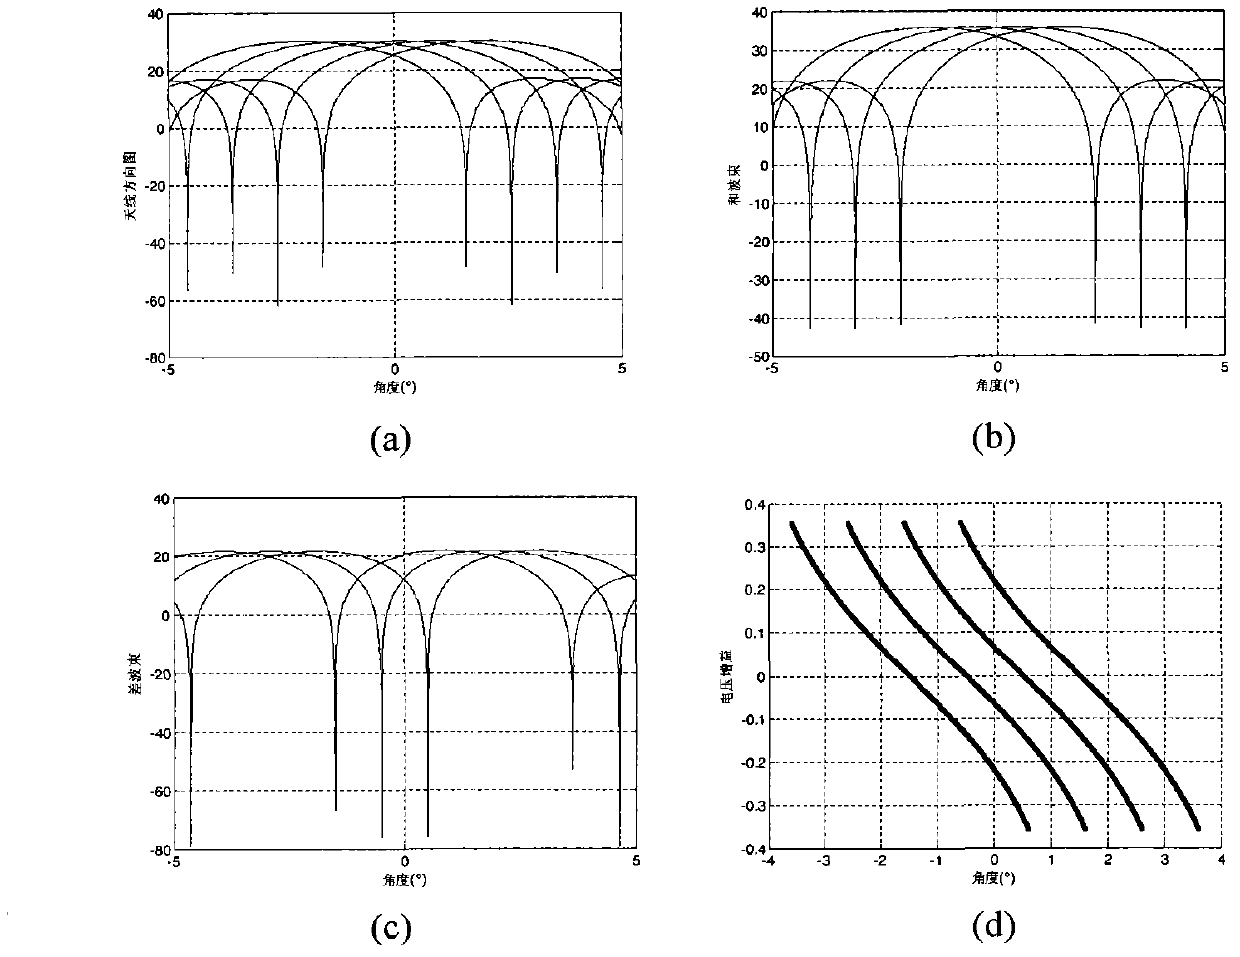 Multi-beam single-pulse angle measuring method based on beam selection method